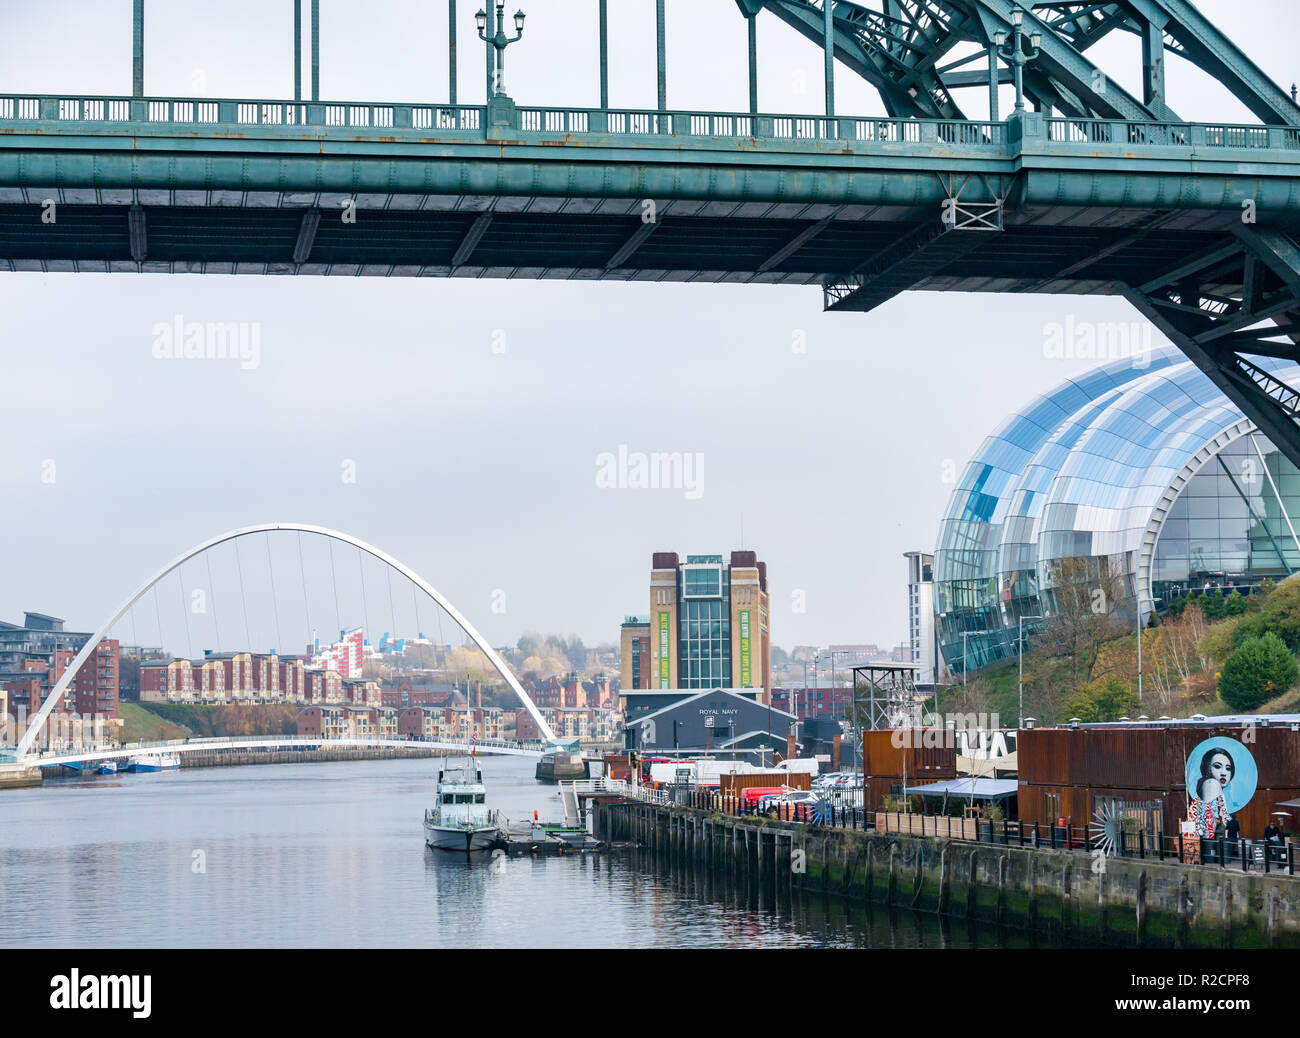 Anzeigen unter Tyne Bridge von Sage Gateshead Kultur Center Gebäude, Fluss Tyne, der Newcastle Upon Tyne, England, Großbritannien Stockfoto